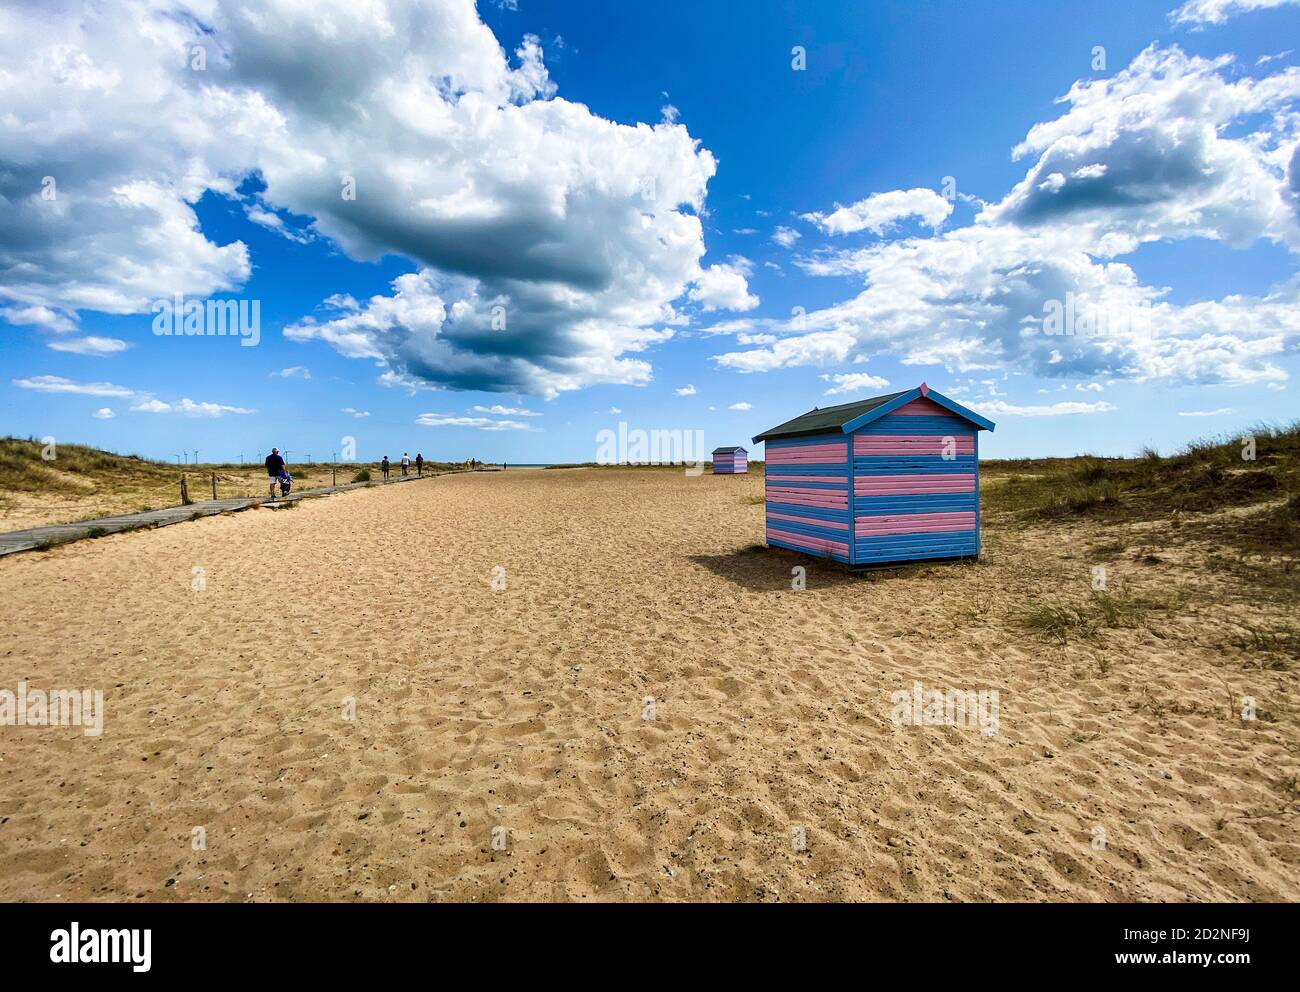 Tolle Strandhütten in Yarmouth an einem Sommertag, traditionelle britische Hütte an einer englischen Ostküste, blaue und rosa horizontale Streifen, Himmel mit Wolken ohne Peopl Stockfoto